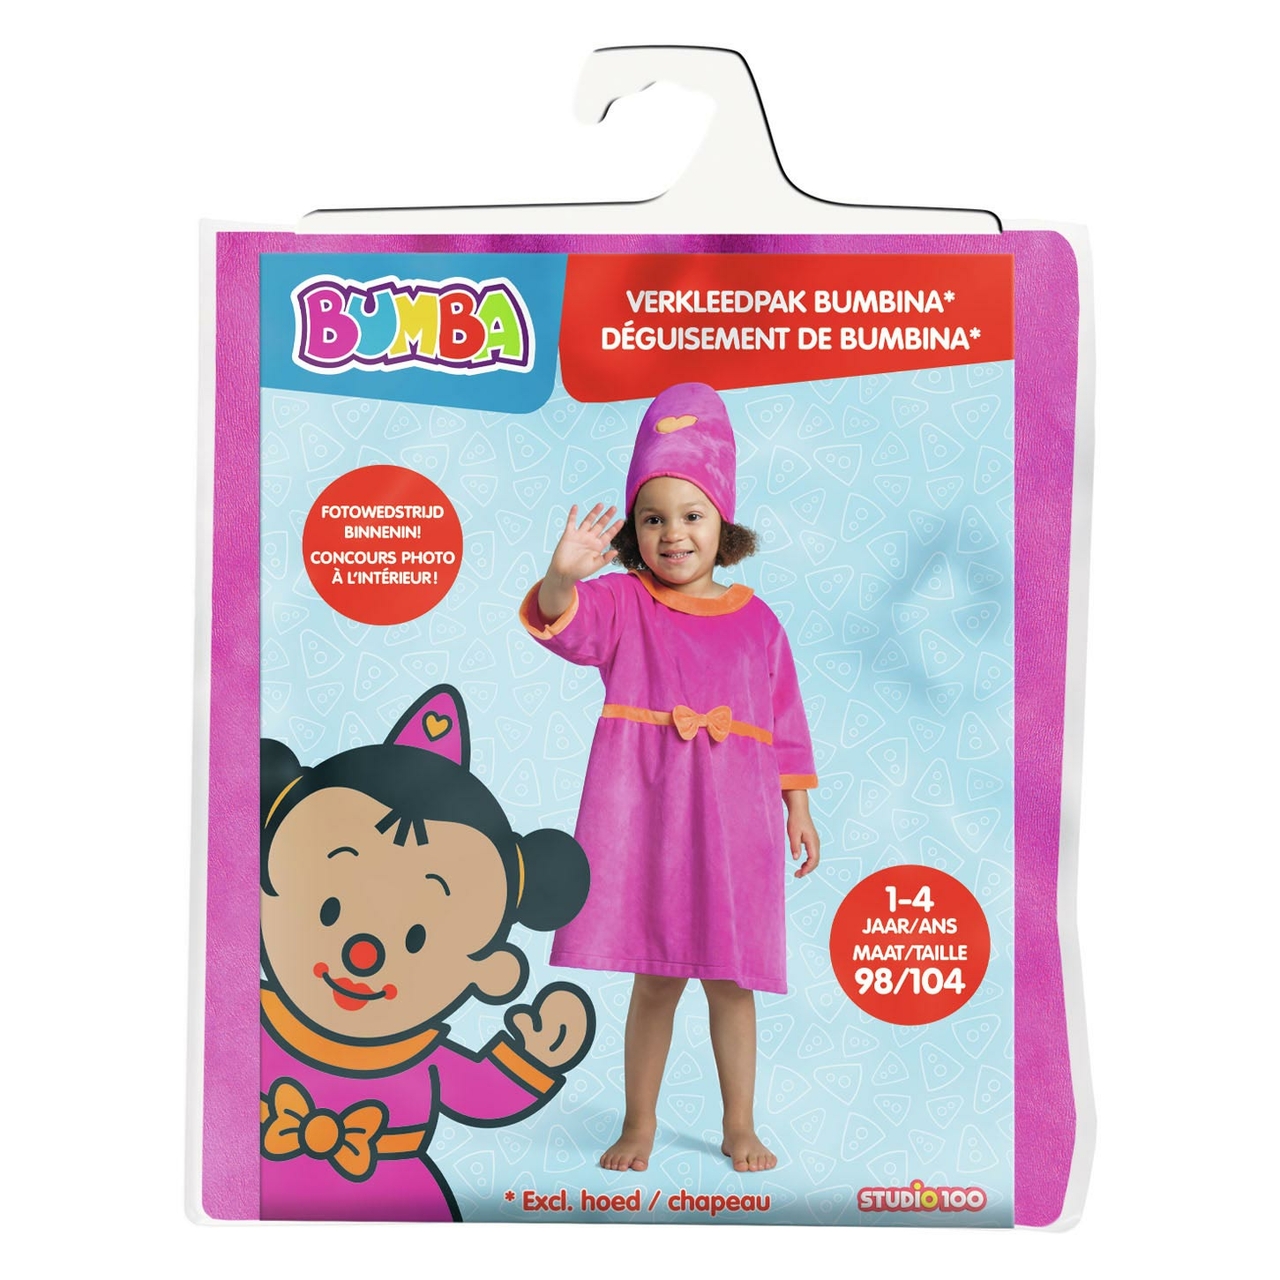 Meerdere krans Overredend Bumba : Bumbina Verkleedpakje, 1-4 jaar - Het Speelgoedpaleis